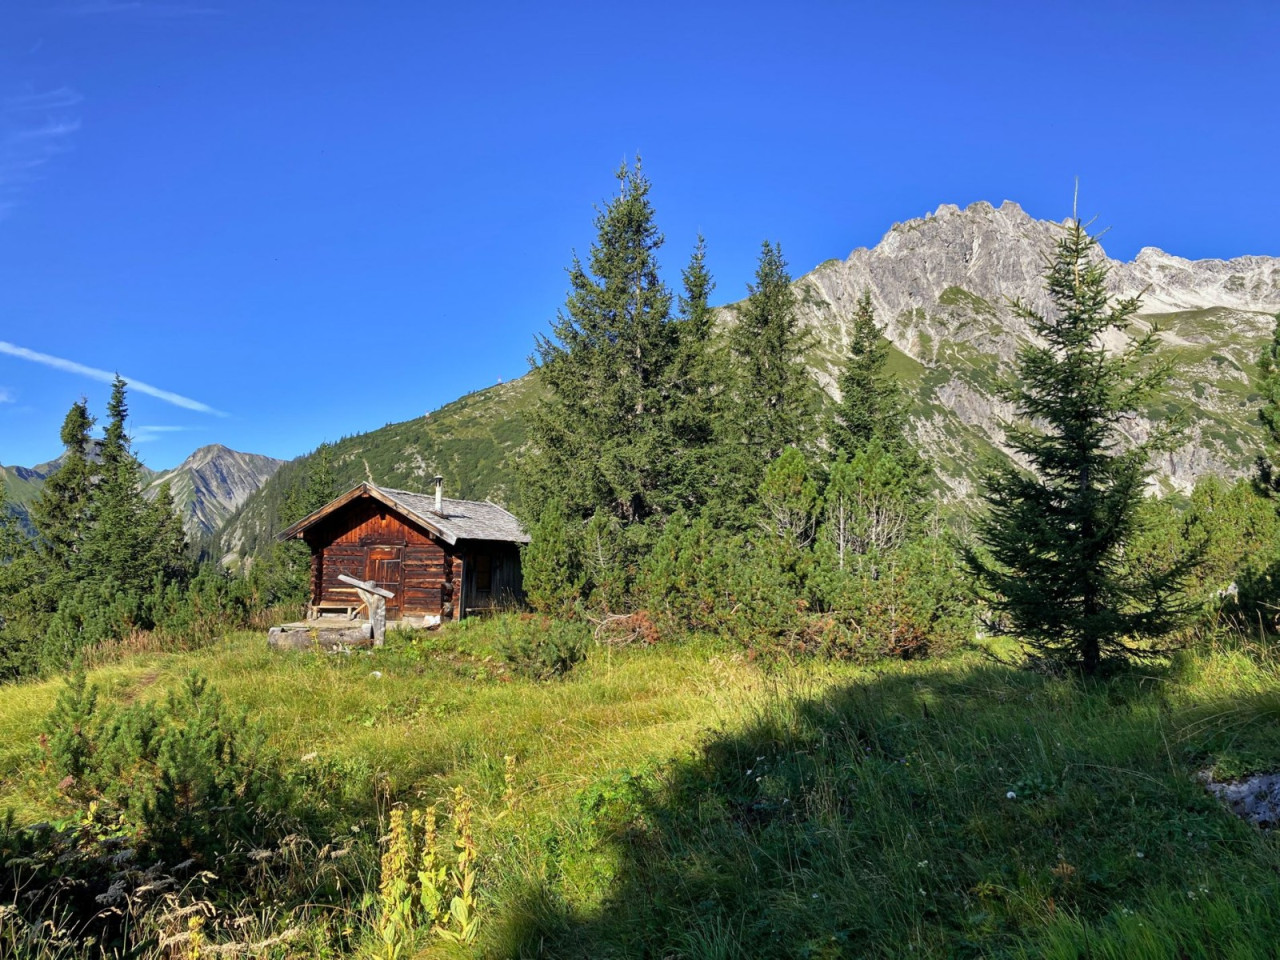  Jagdhütte auf dem Weg zur Rotwand